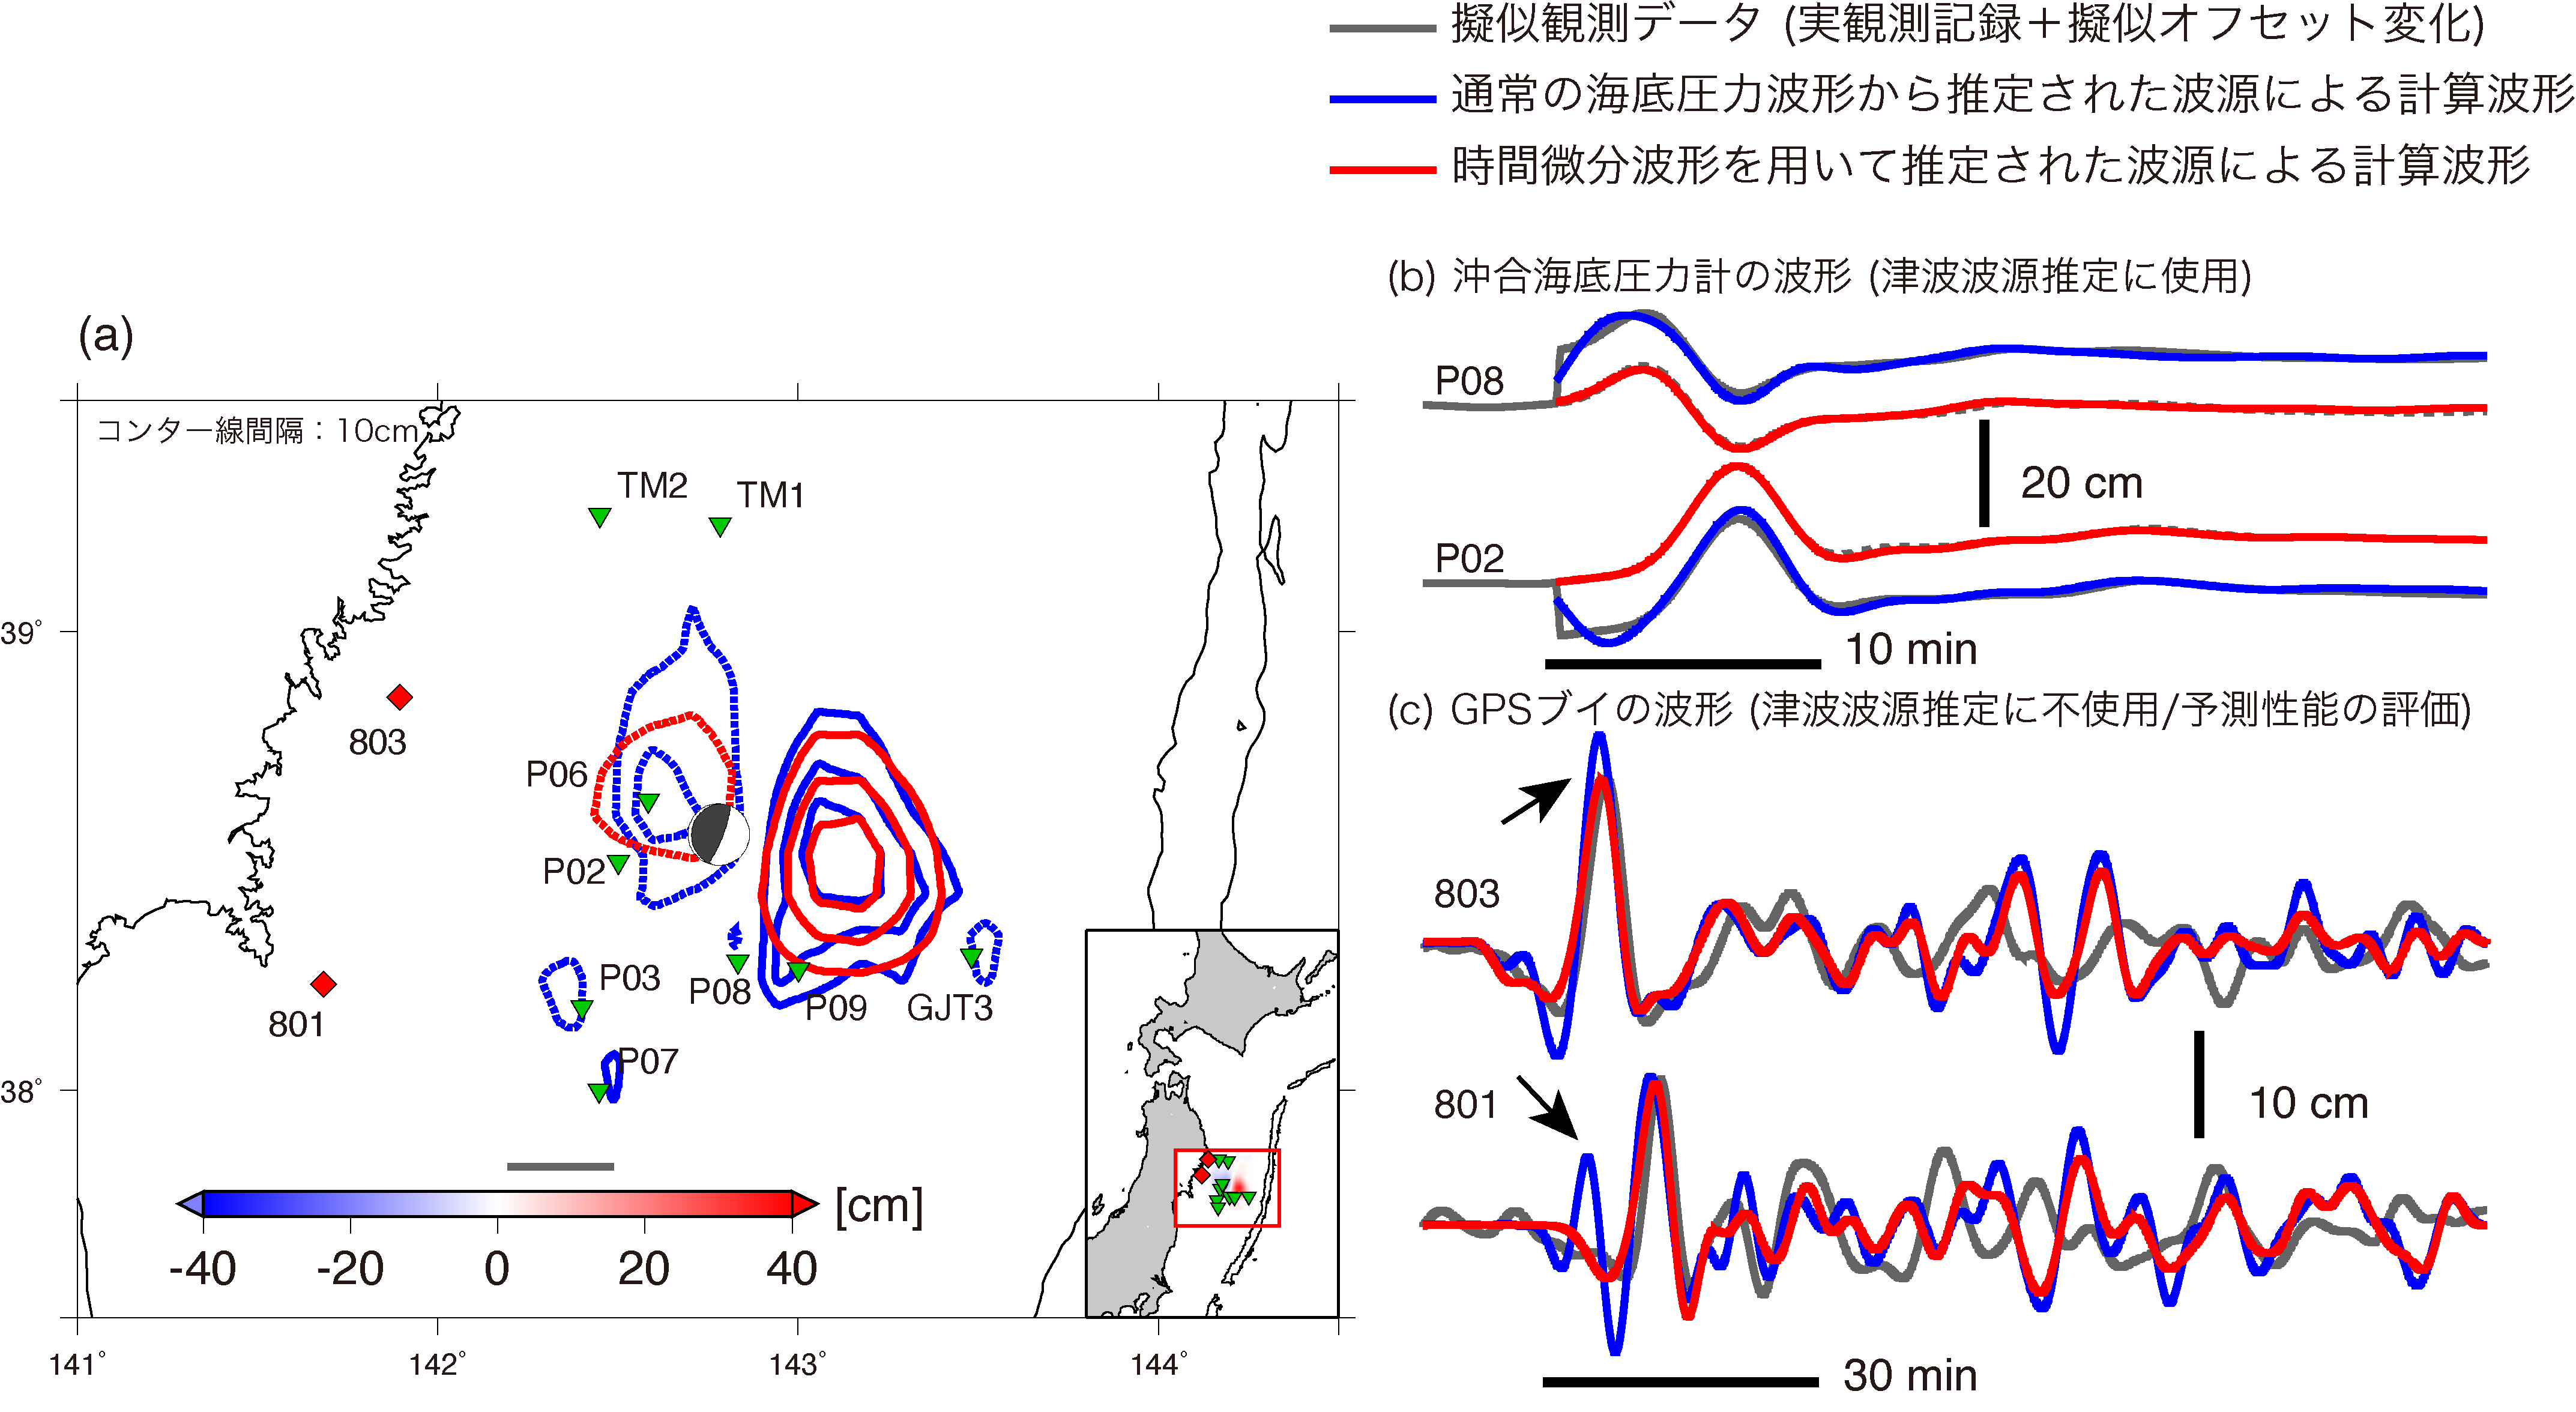 (a) 本研究で解析対象とした2011年3月9日の地震 (Mw 7.3) の，擬似オフセット変化を与えた場合に推定された波源 (青)，時間微分記録を使って推定された波源分布 (赤)．沖合津波計の位置を緑三角で，沿岸のGPSブイの位置を赤四角で示している．遠地地震波形から得られたGlobal CMT解を灰色で示している．(b) 水圧計の波形の比較 (一例)．灰色線は擬似DC変化を加えたあとの観測波形，青線はオフセット変化を含む擬似データから推定した波源分布から計算した波形，赤線は時間微分波形から推定した波源分布から計算した波形．(c) GPSブイの実際の観測波形 (灰色) と予測波形 (青，赤) の比較．